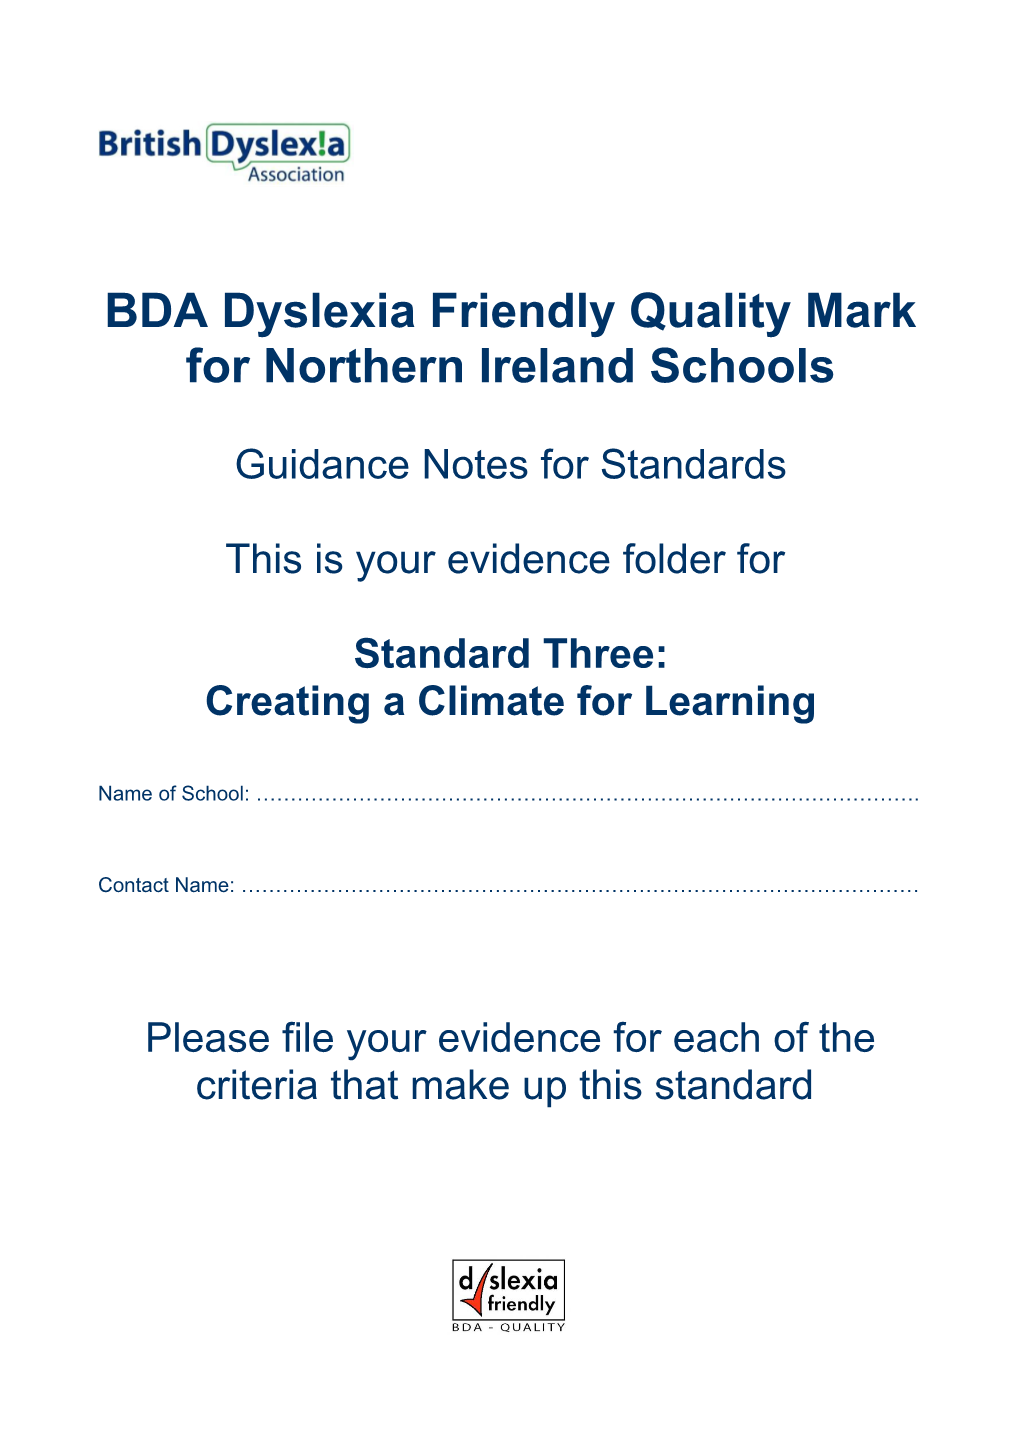 BDA Dyslexia Friendly Quality Mark for Northern Ireland Schools